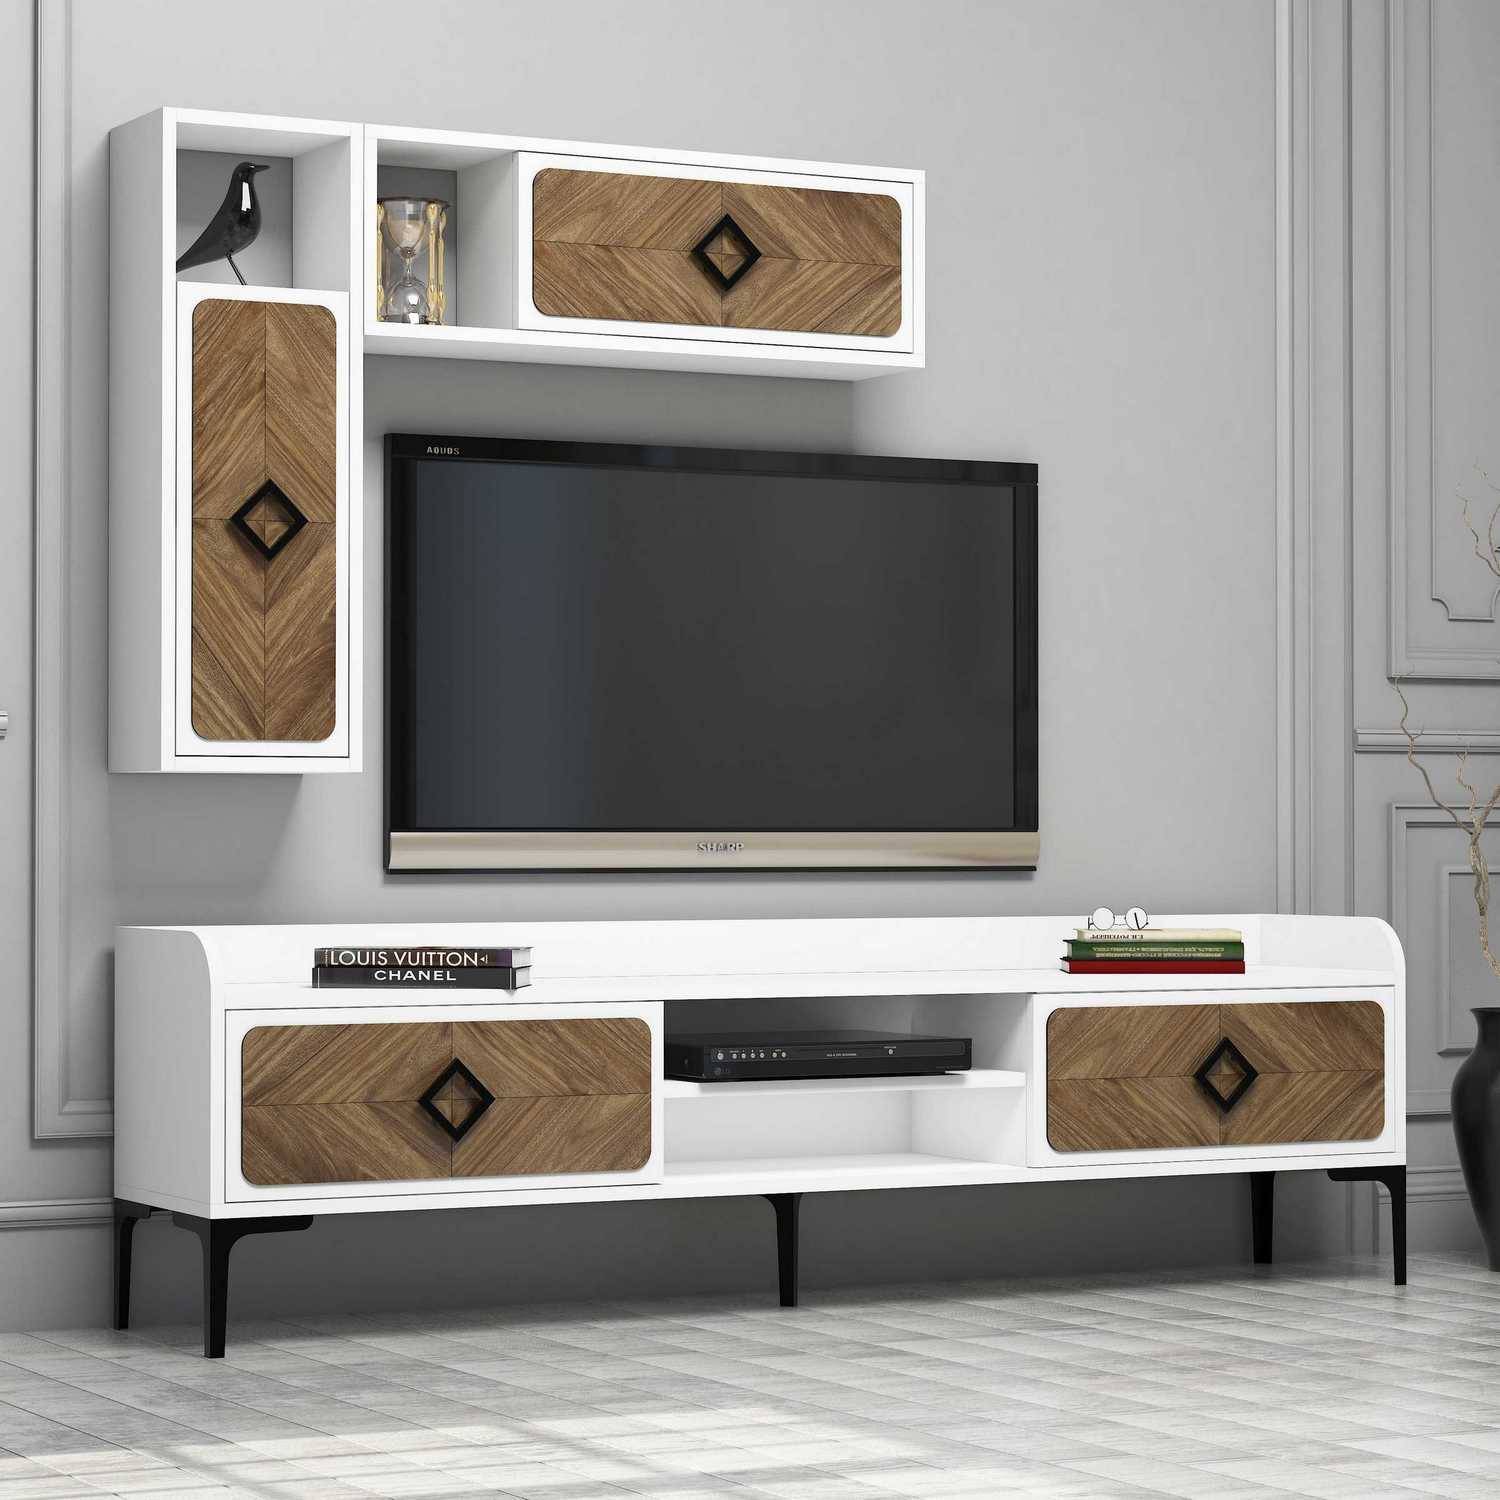 Mueble de TV y estantes de pared Lebon Madera oscura y blanca